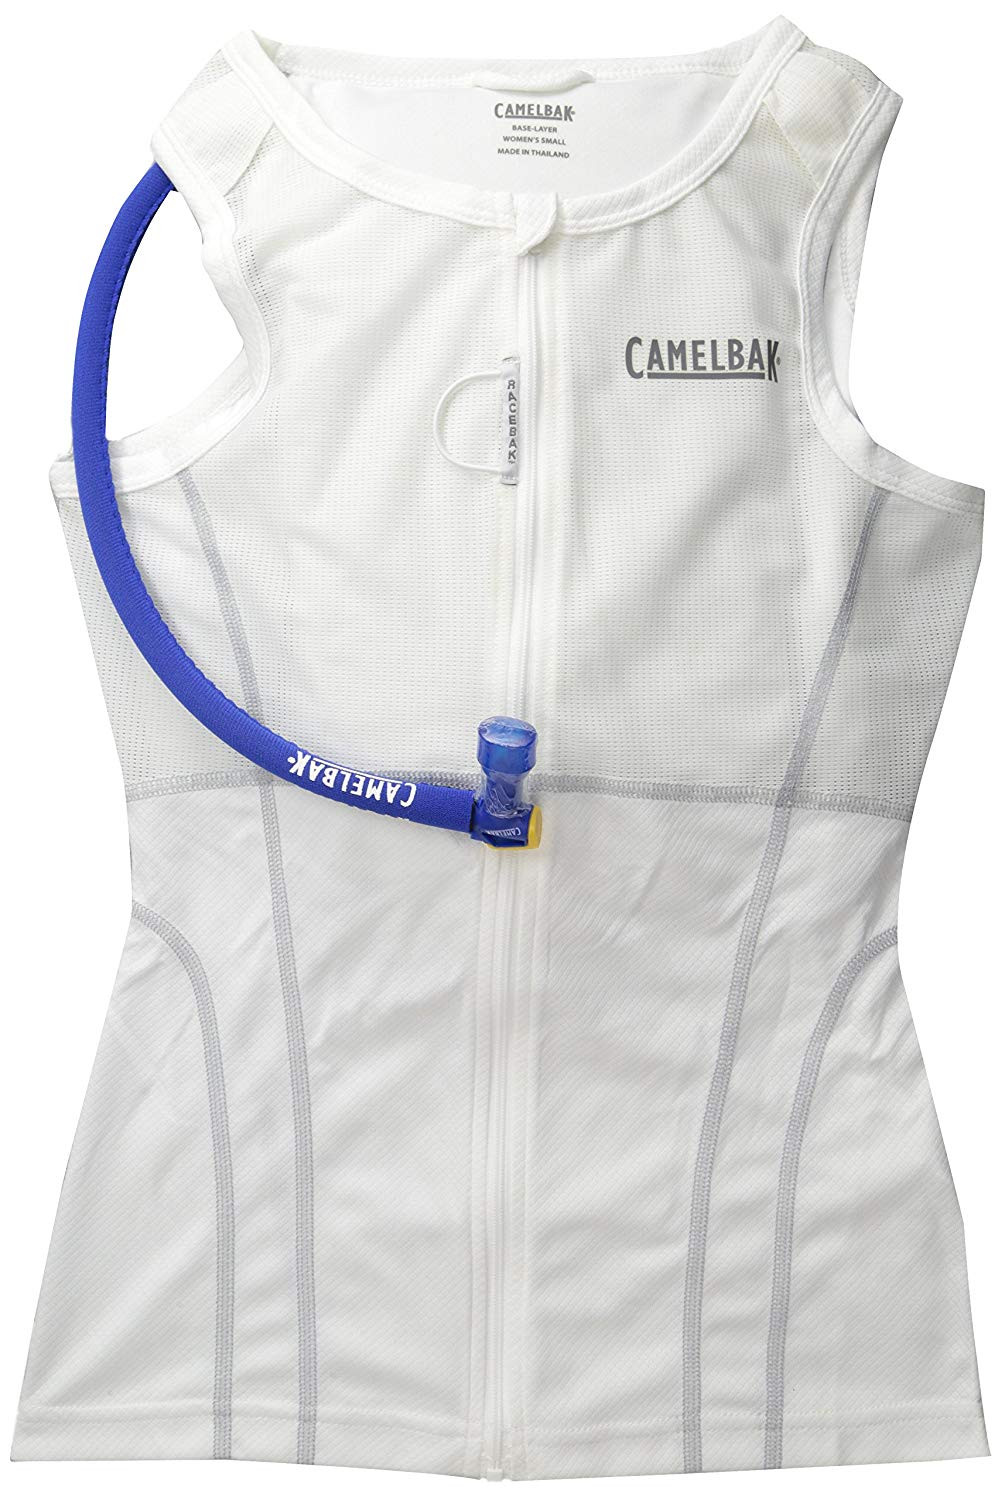 CAMELBAK RACEBAK Women's 70oz Hydration Jersey 2L White Size L (61579)